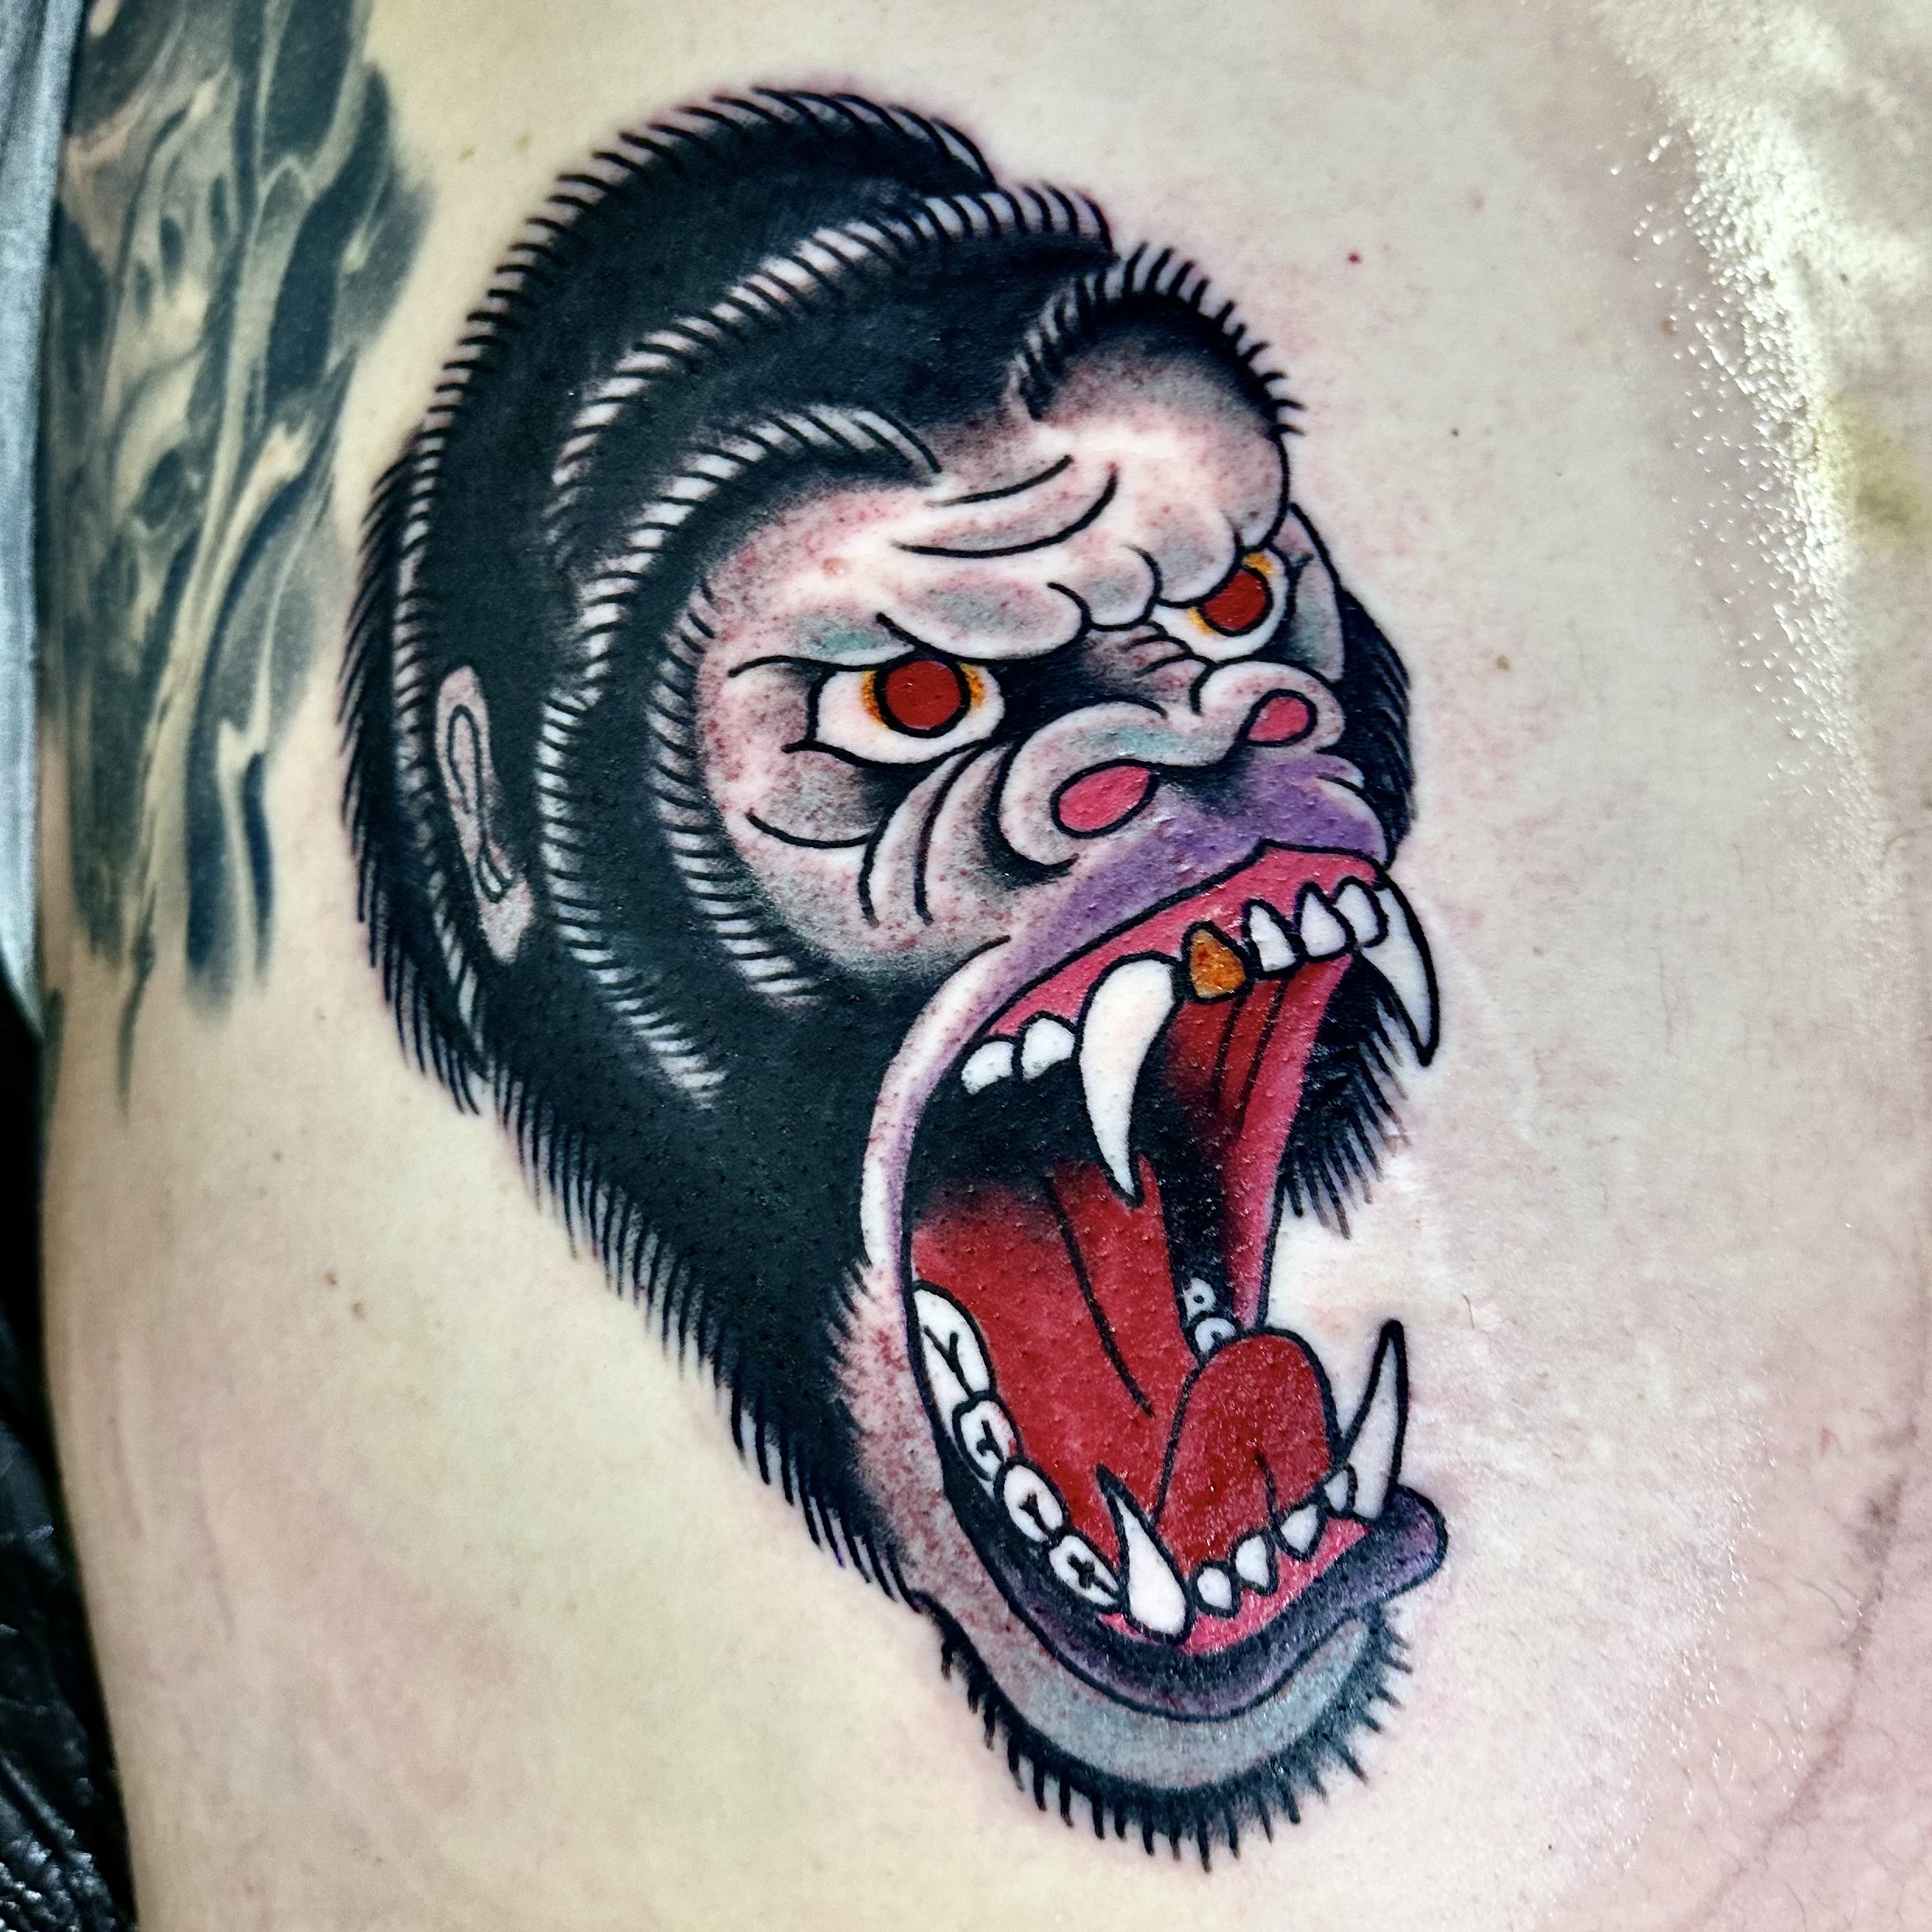 Tattoo of a gorilla from DFW tattoo shop